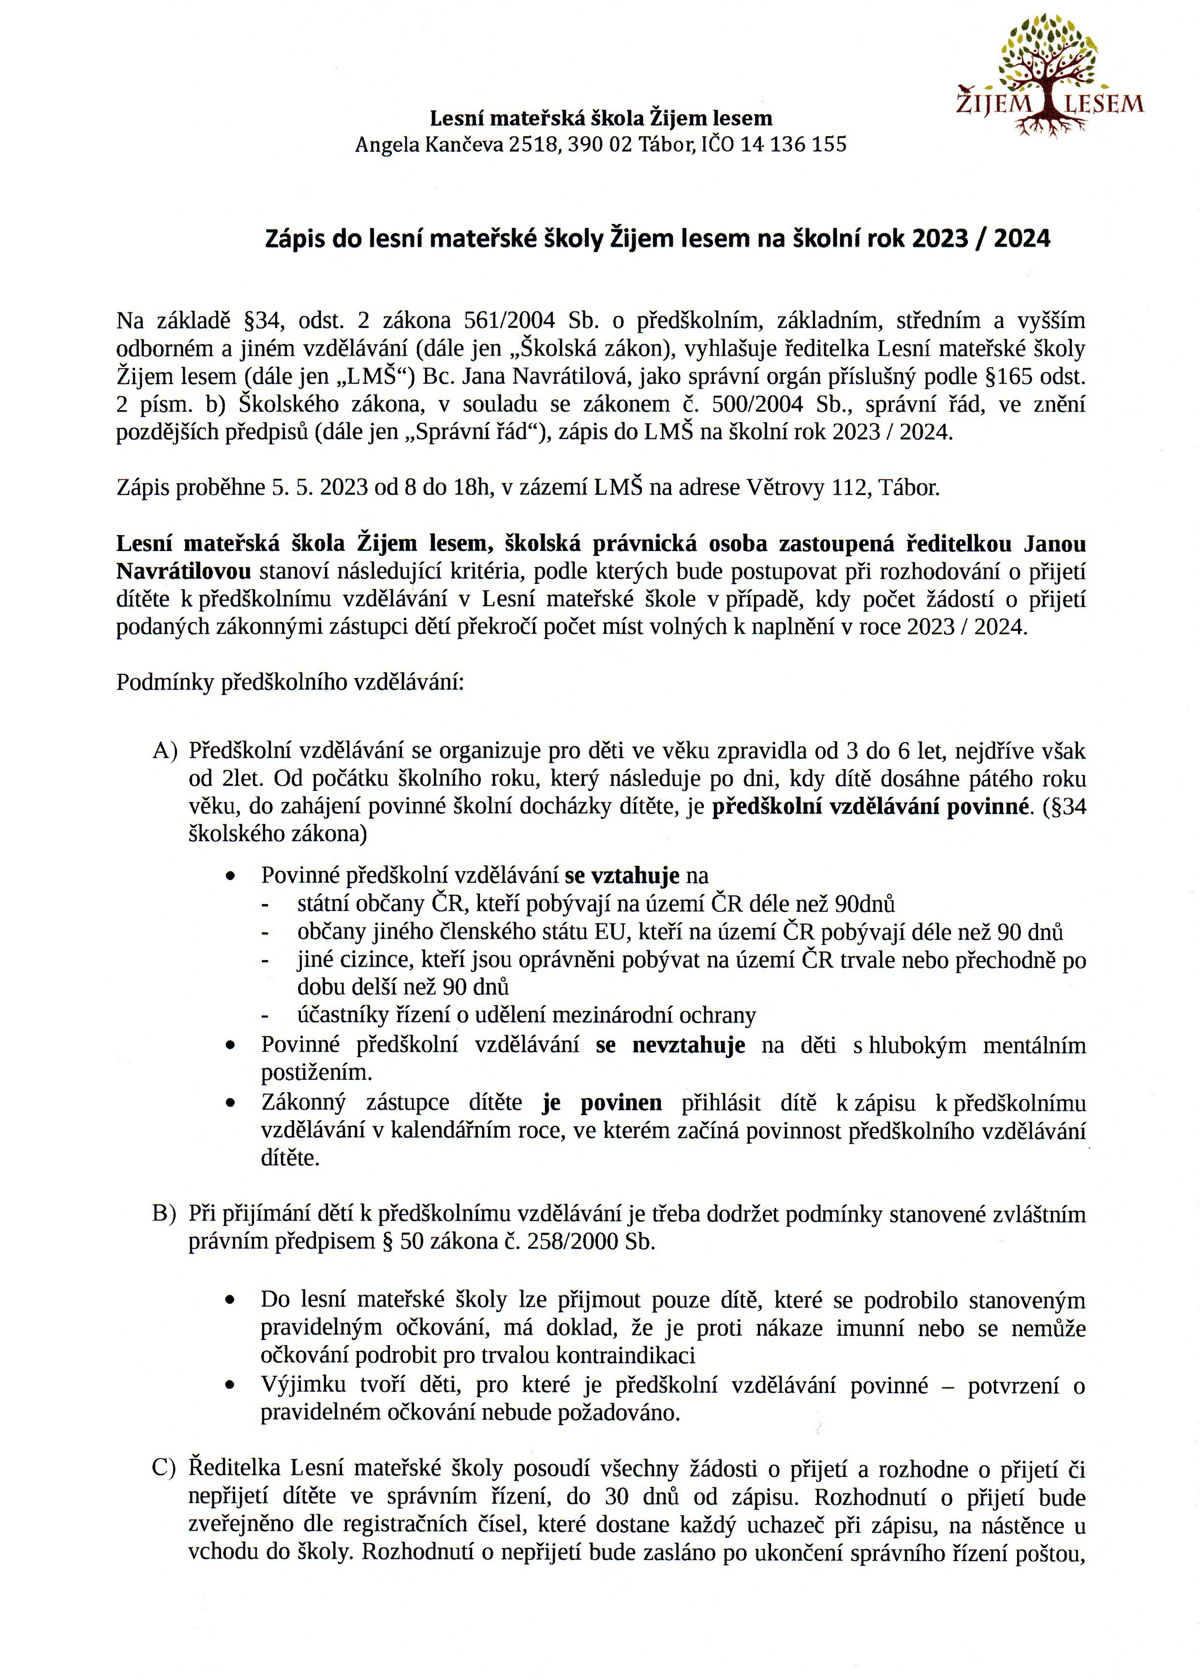 Kritéria zápisu 2023 / 2024, strana 1 - Zijemlesem.cz